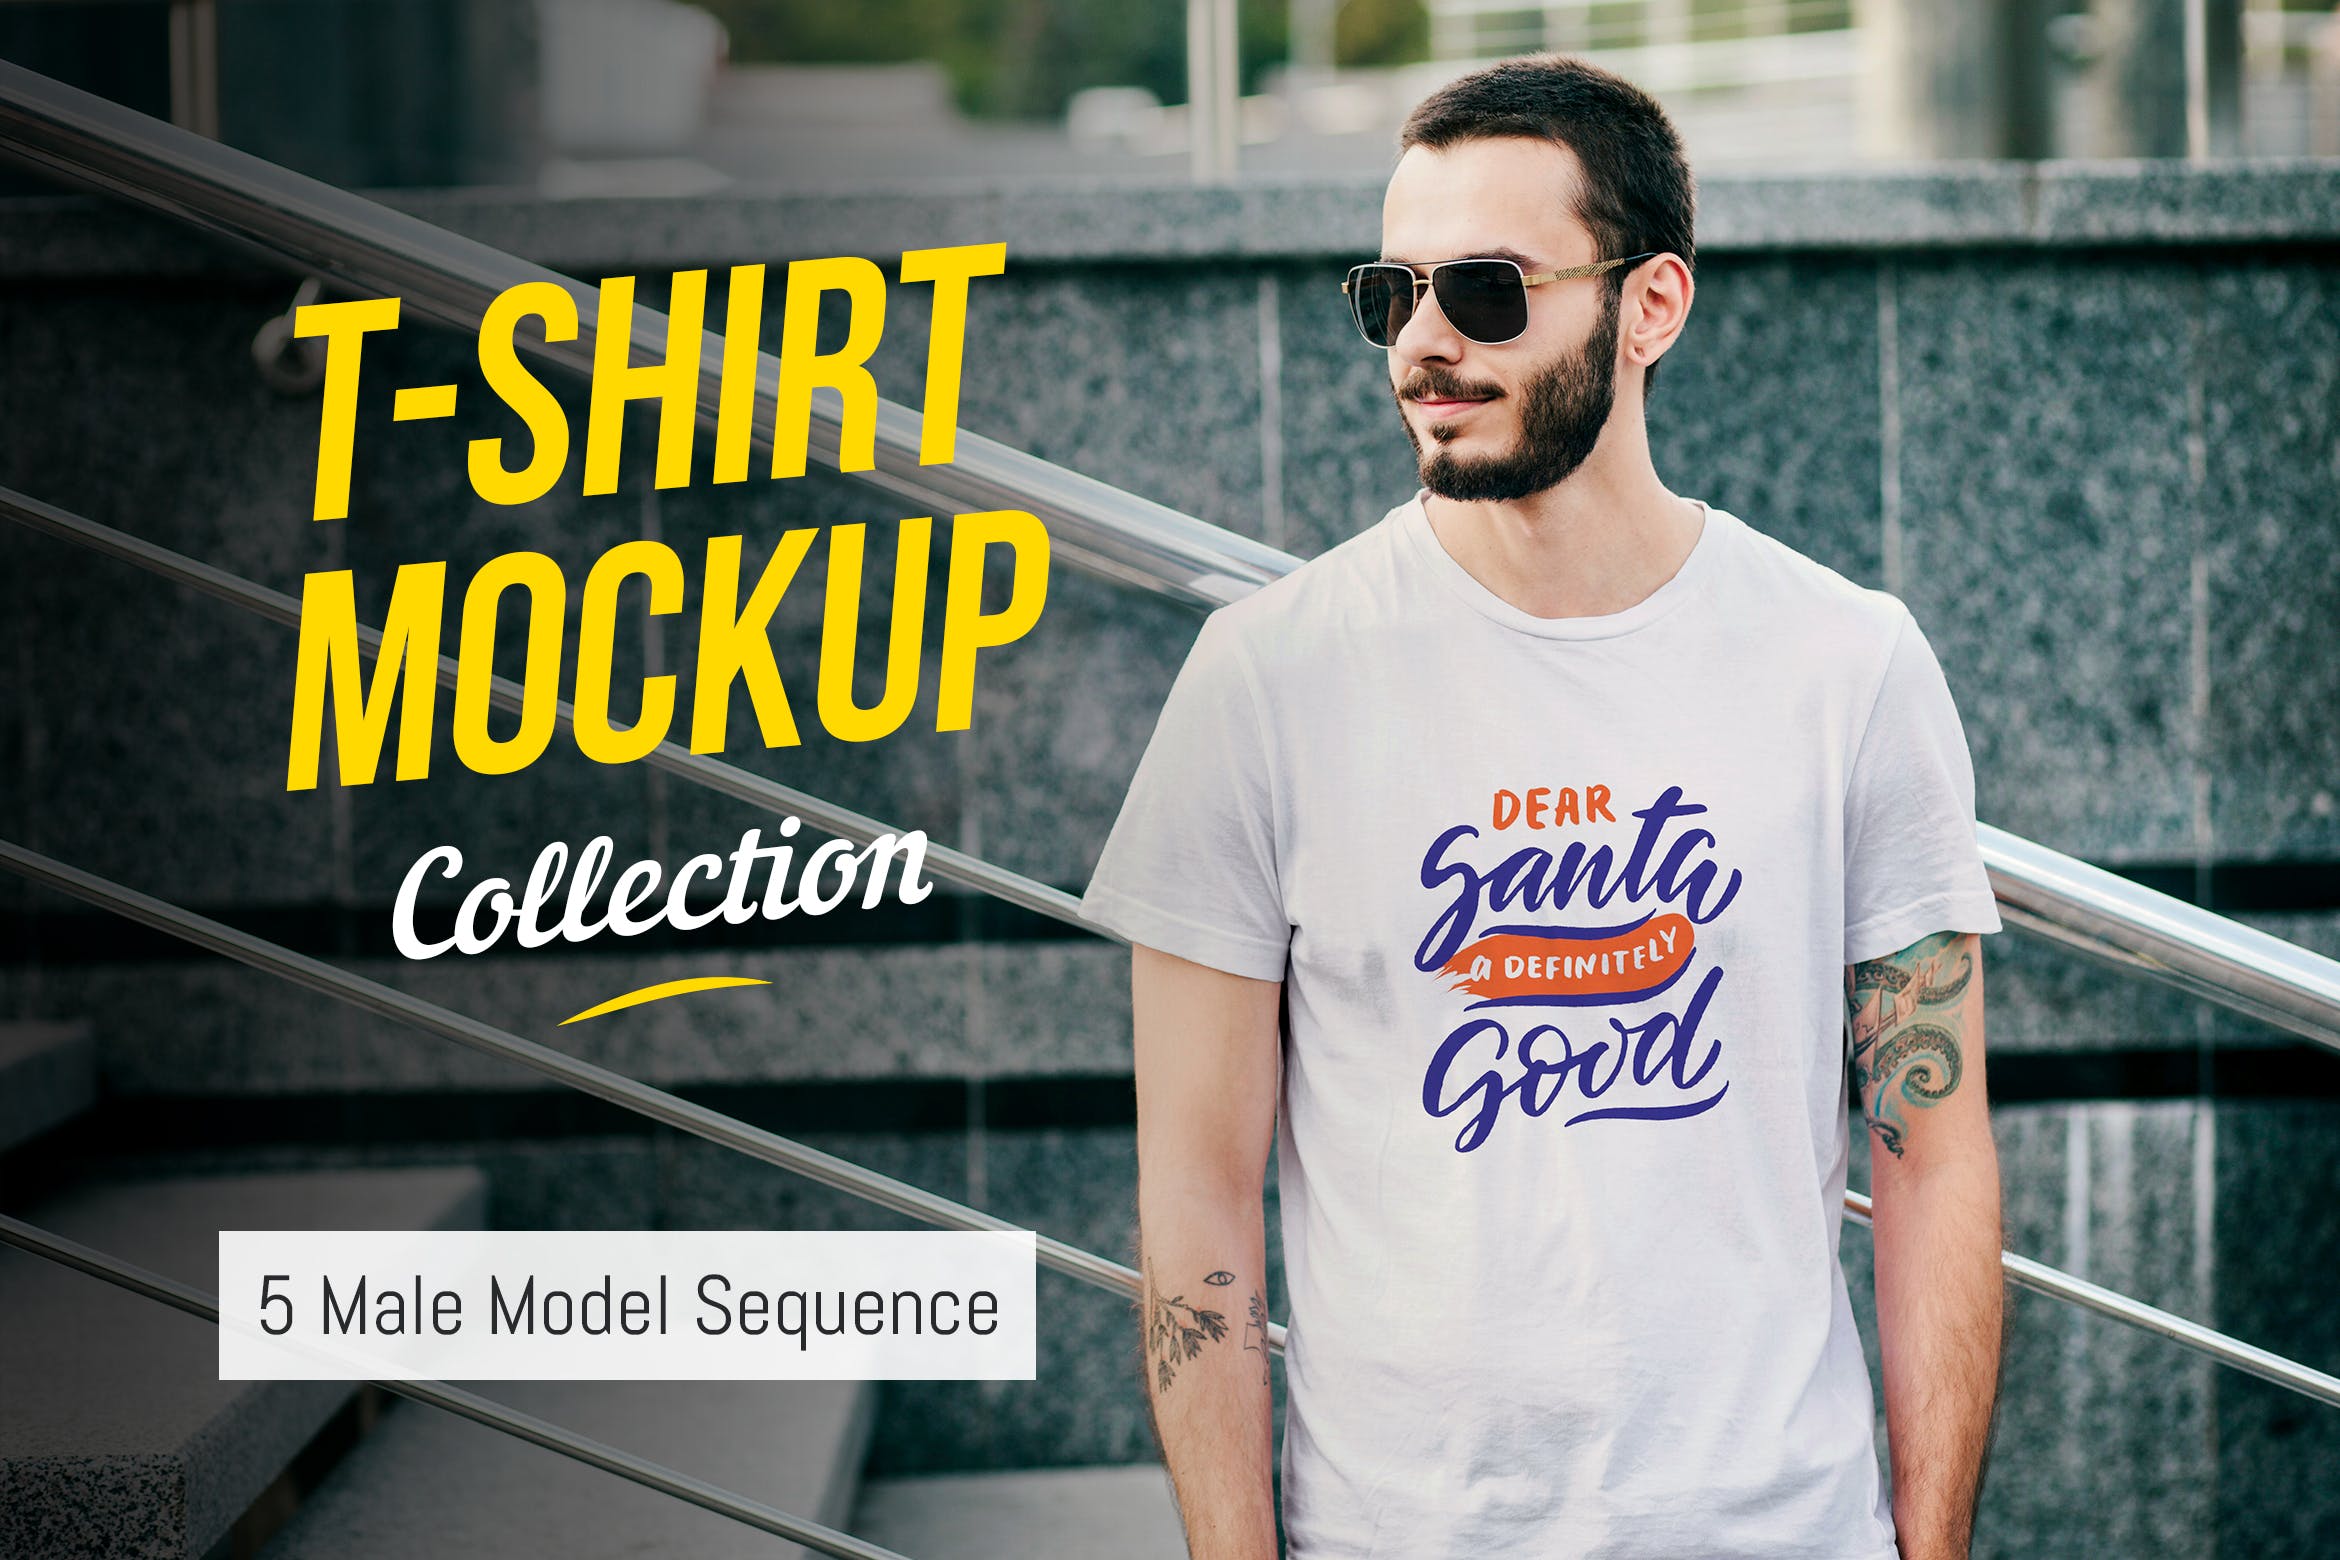 男士T恤胸前印花设计模特上身效果图样机03 T-Shirt Mockup Collection 03插图